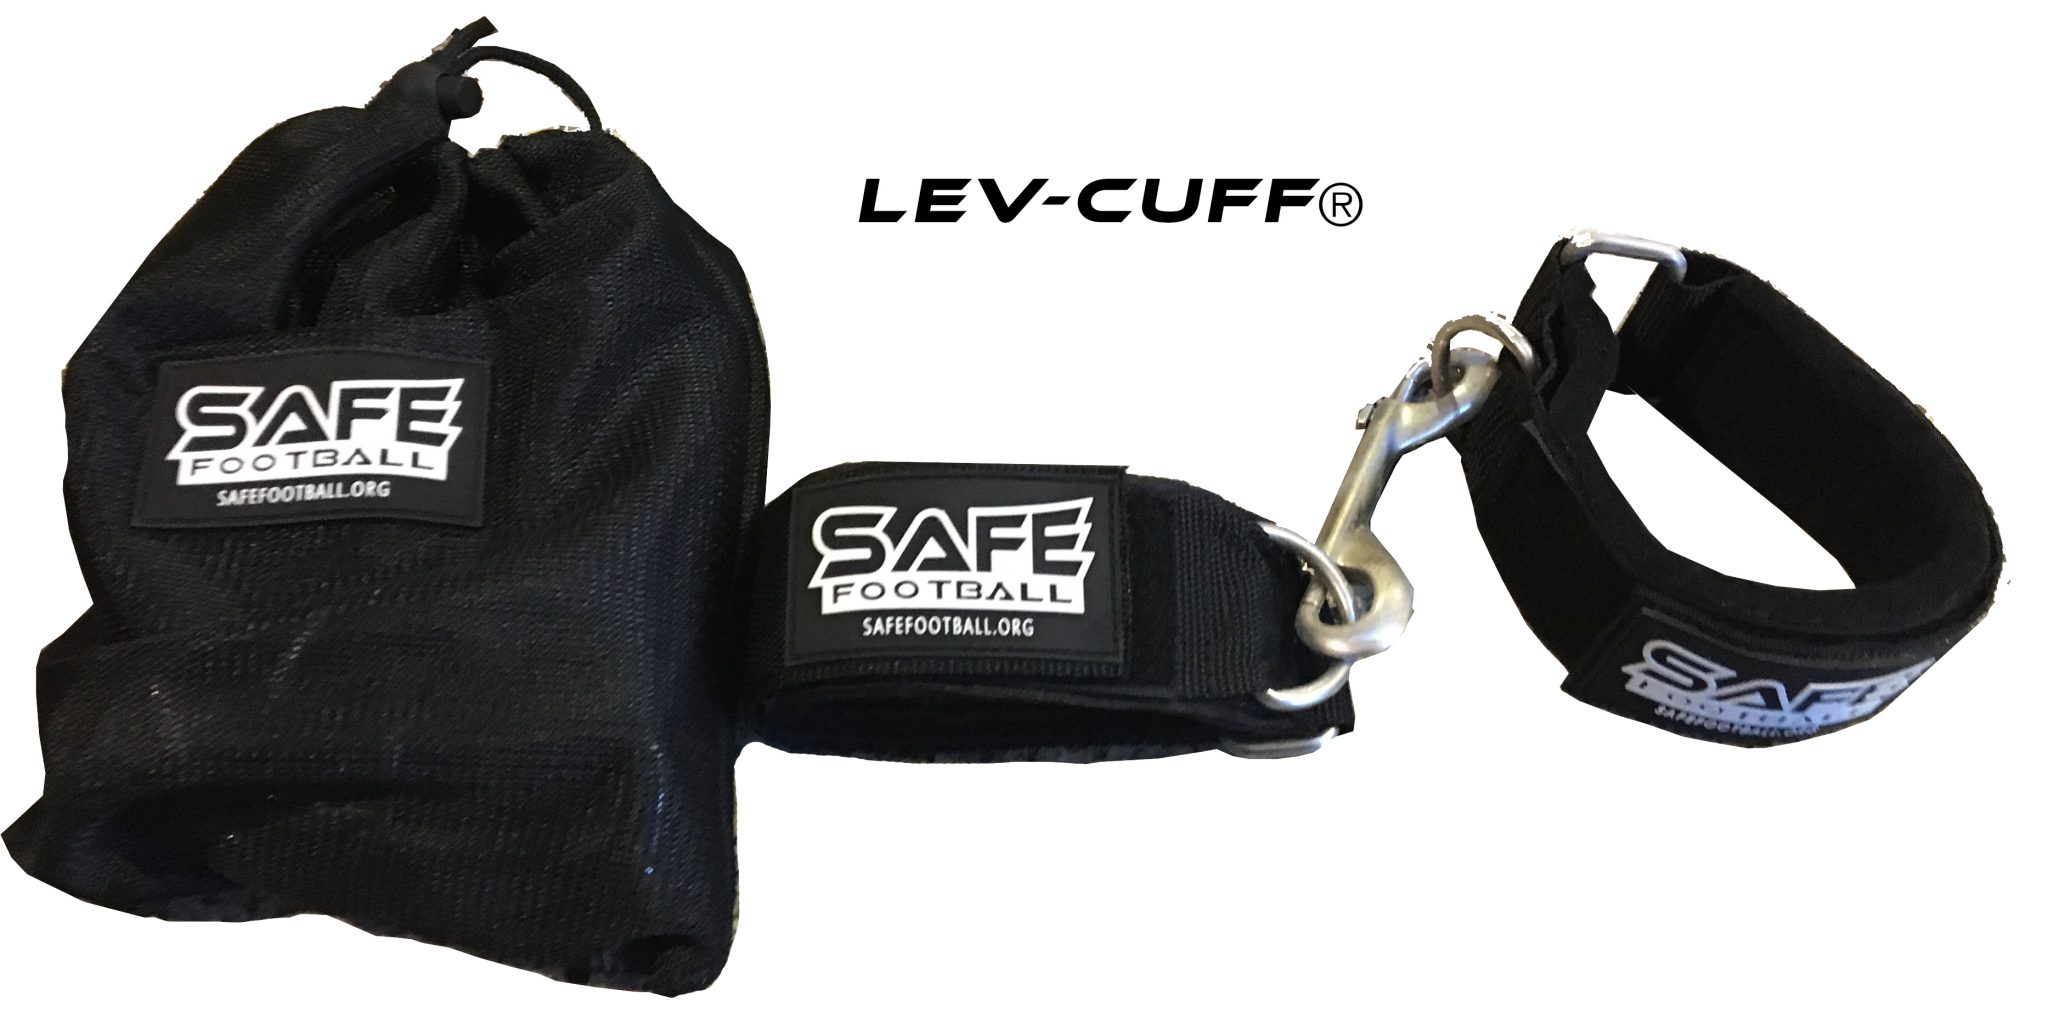 Leverage Cuffs